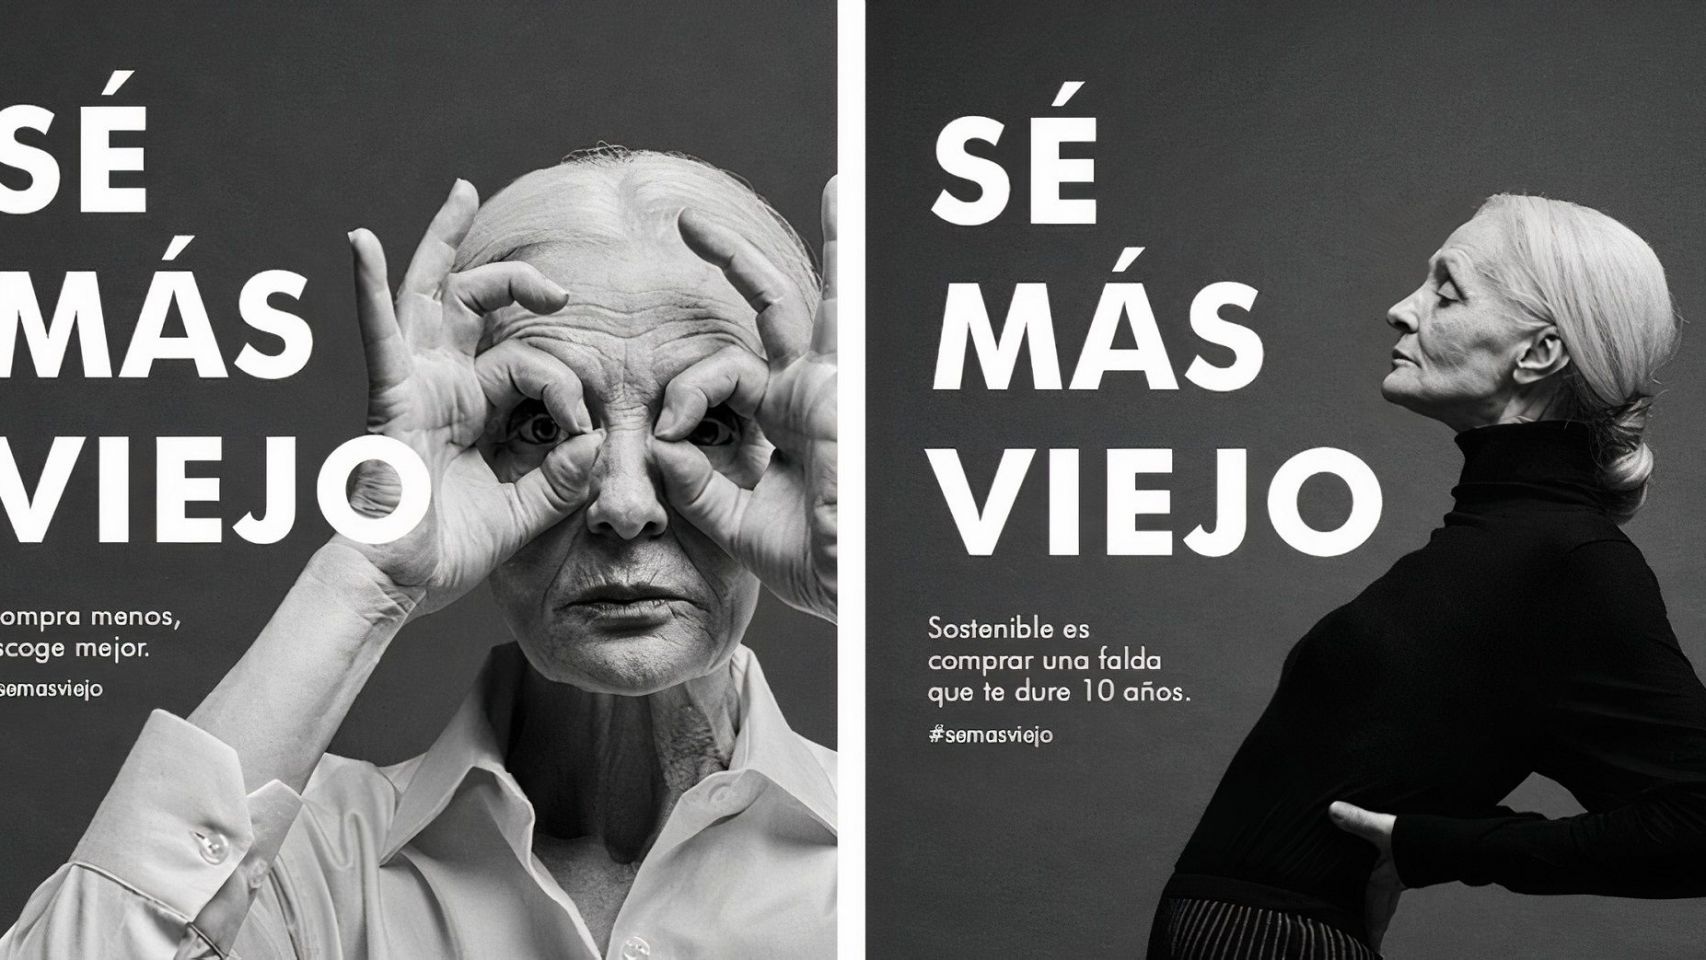 Una imagen de la campaña de Adolfo Domínguez "Sé más viejo".